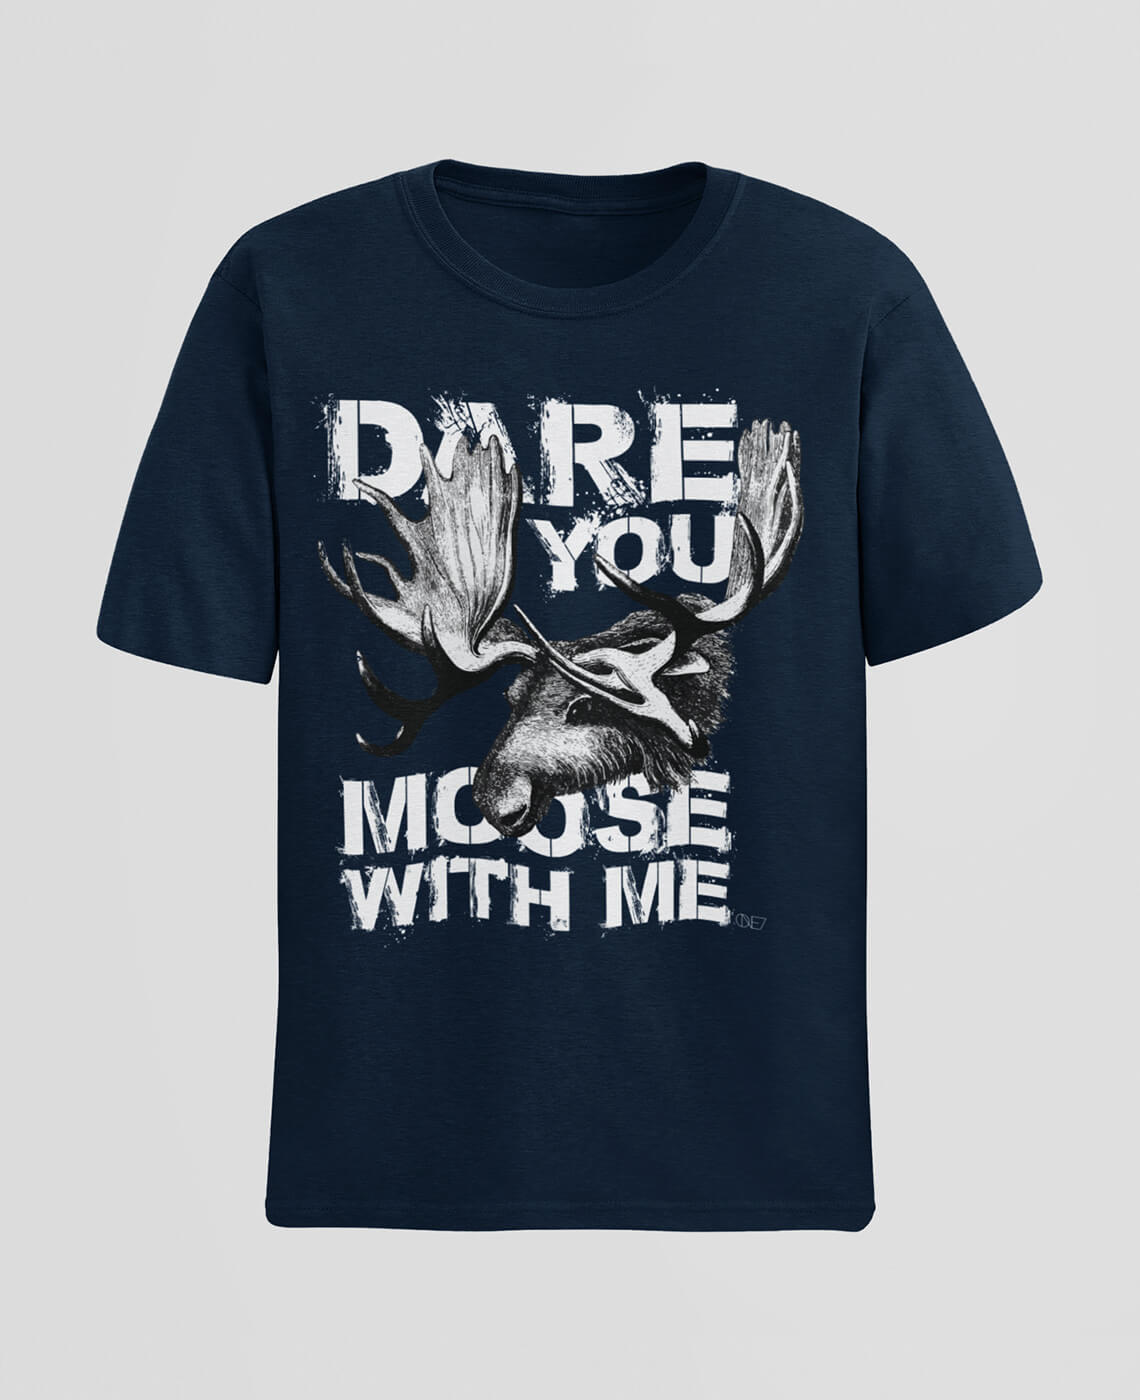 wild dare one7 t shirt 2